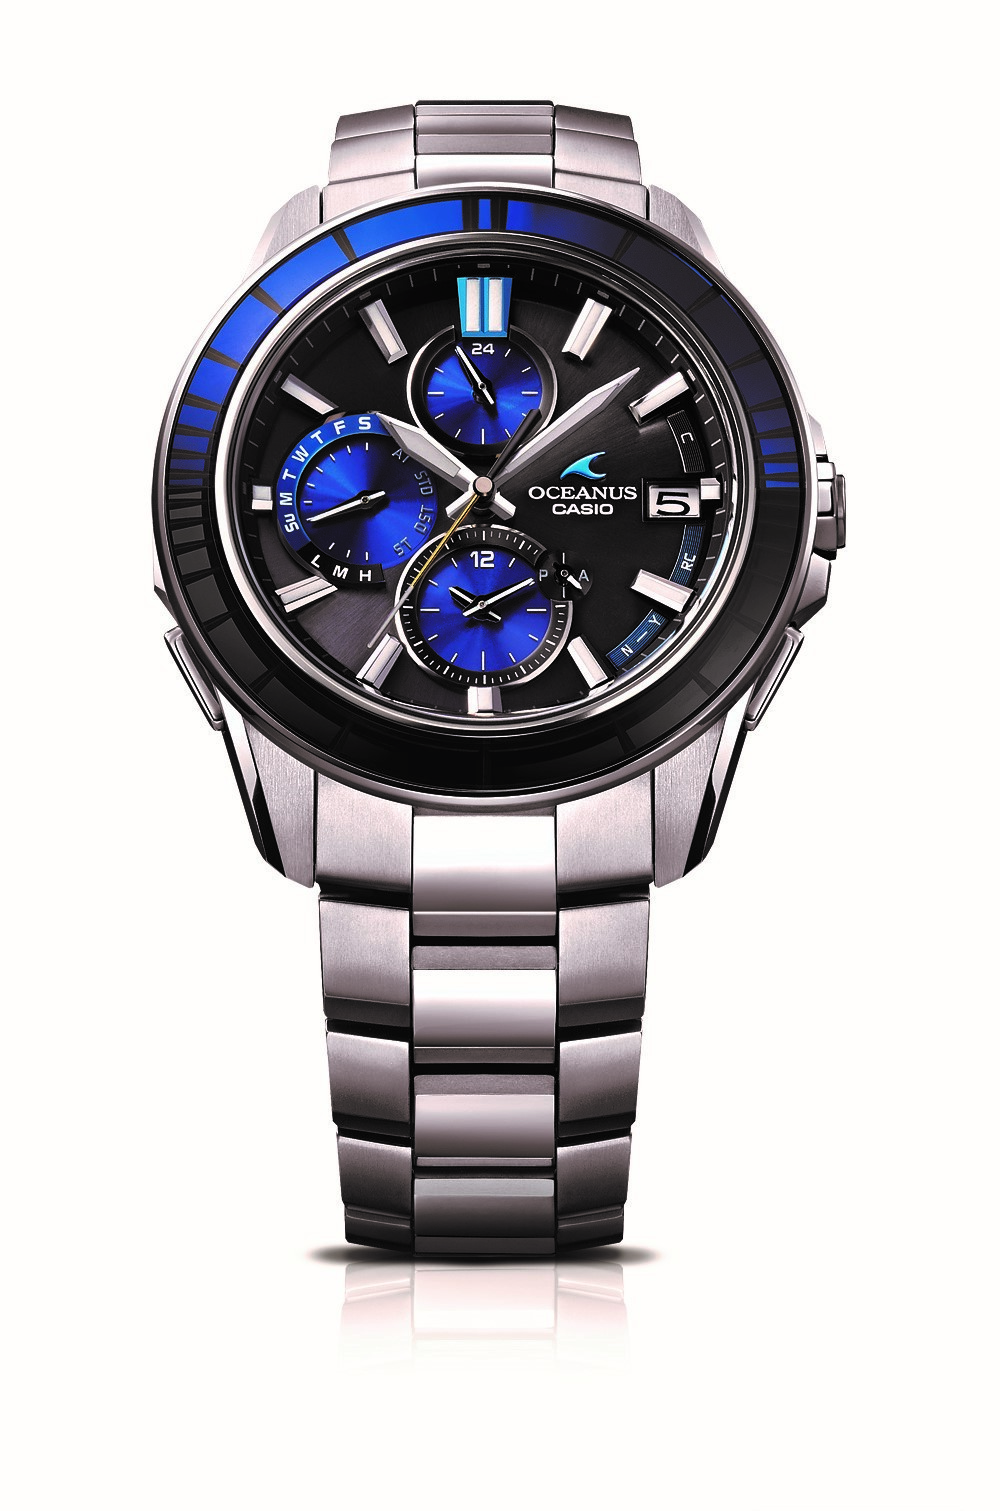 江戸切子 細工の腕時計1500本限定 カシオ オシアナス ブランド新モデル J Cast トレンド